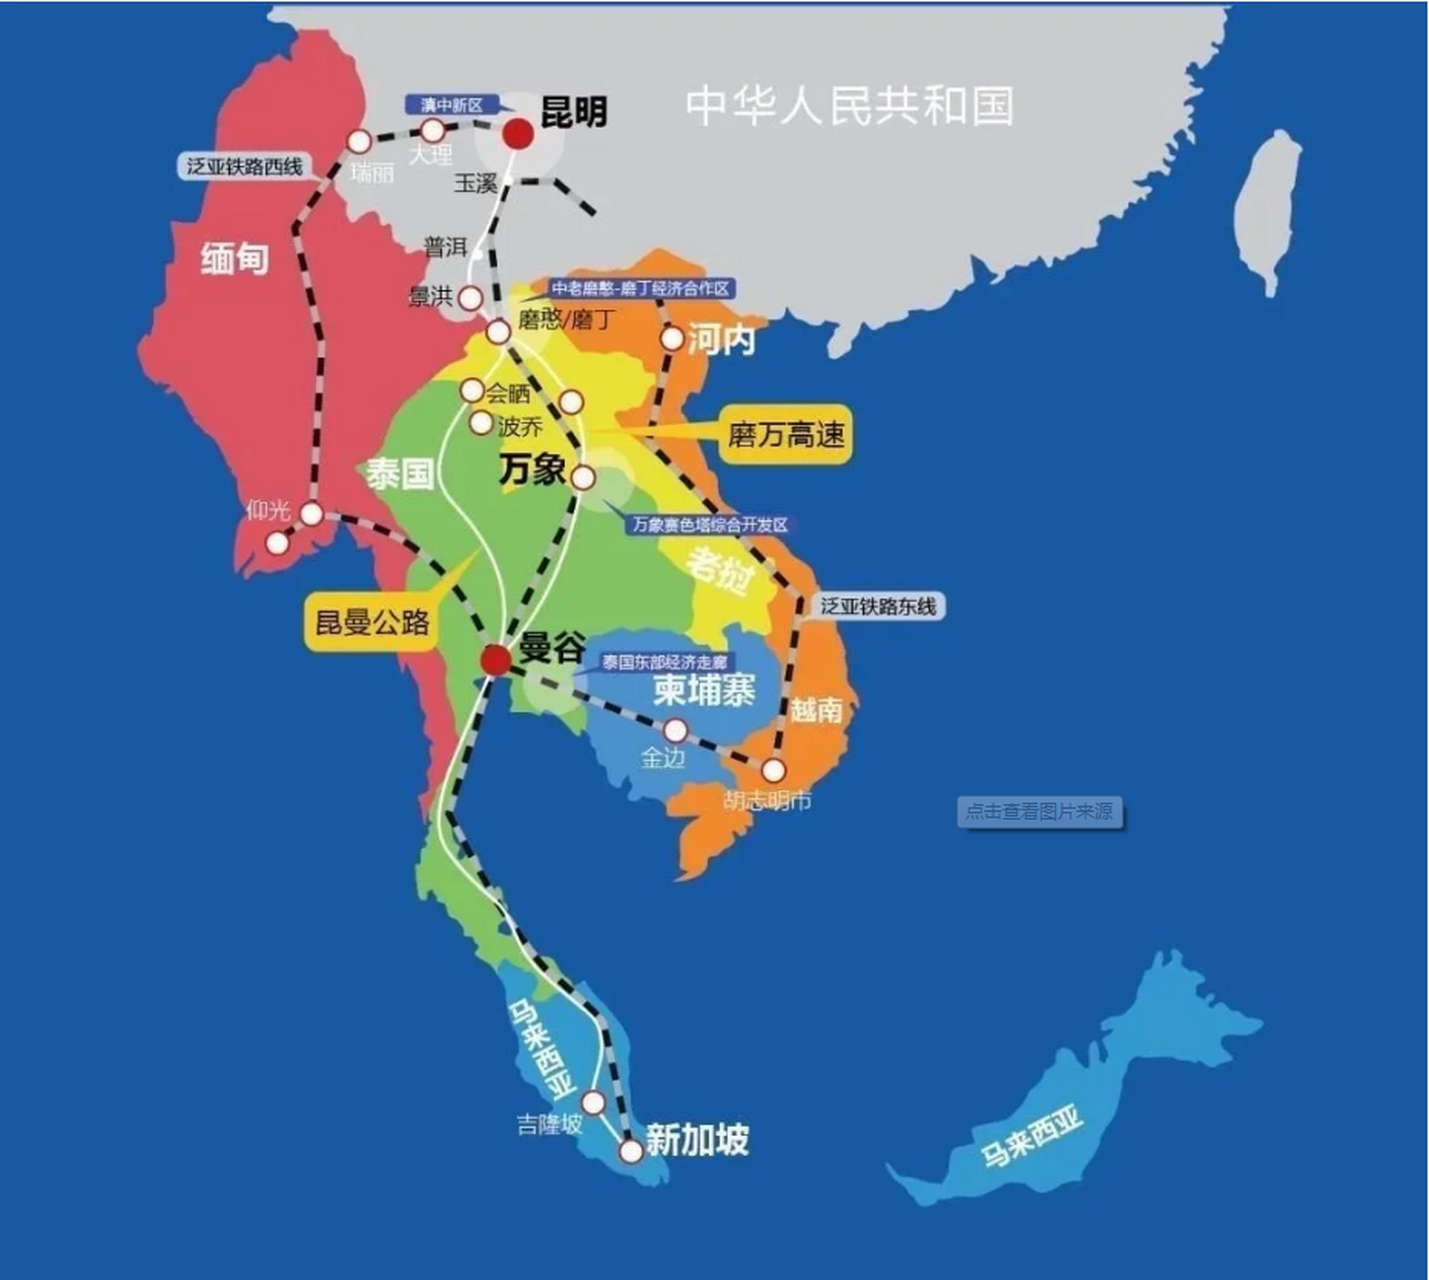 泰国终于忍不住了,拖了很多年的中泰铁路终于要开工了